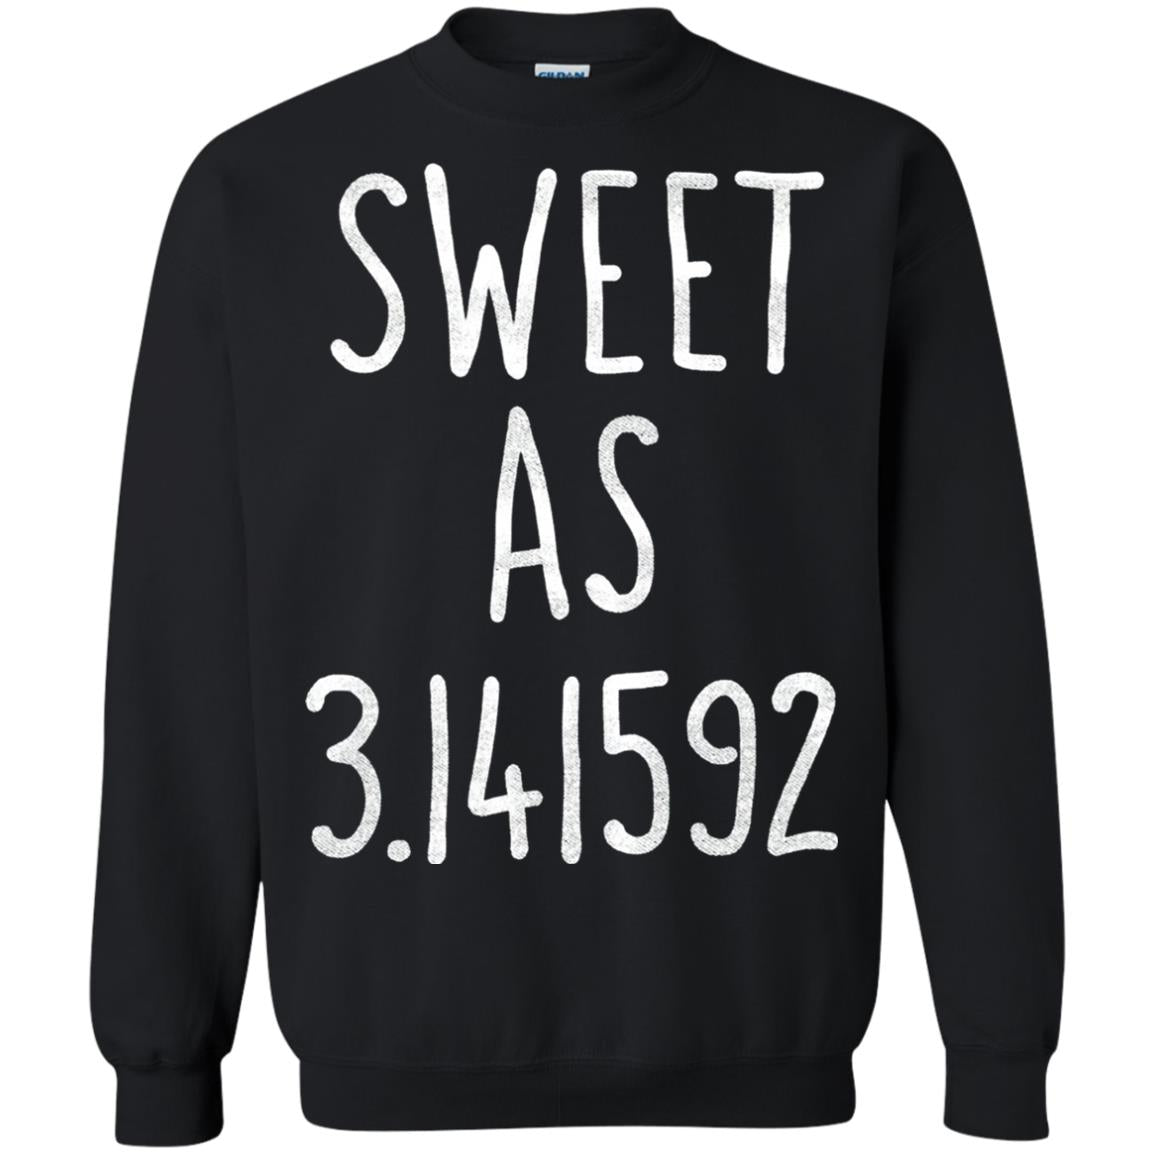 Sweet As Pi Day Math Teacher T-shirt